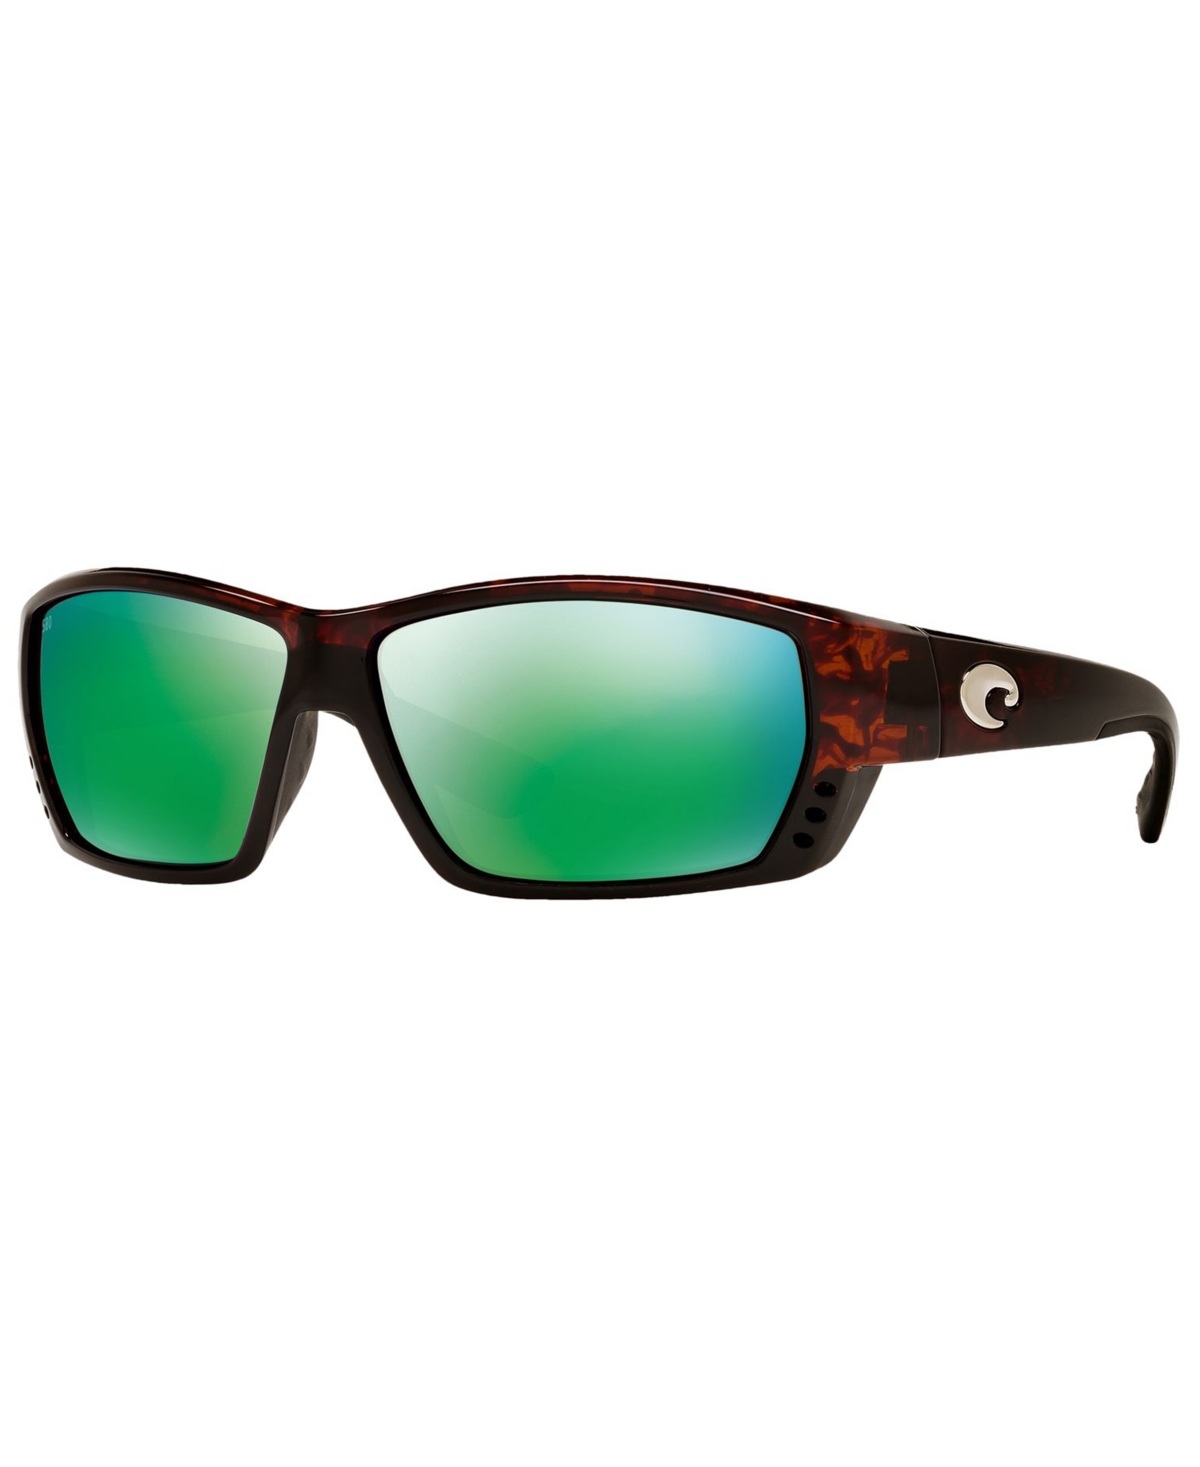 Costa Del Mar Men's Polarized Sunglasses, Tuna Alley In Tortoise,green Mirror